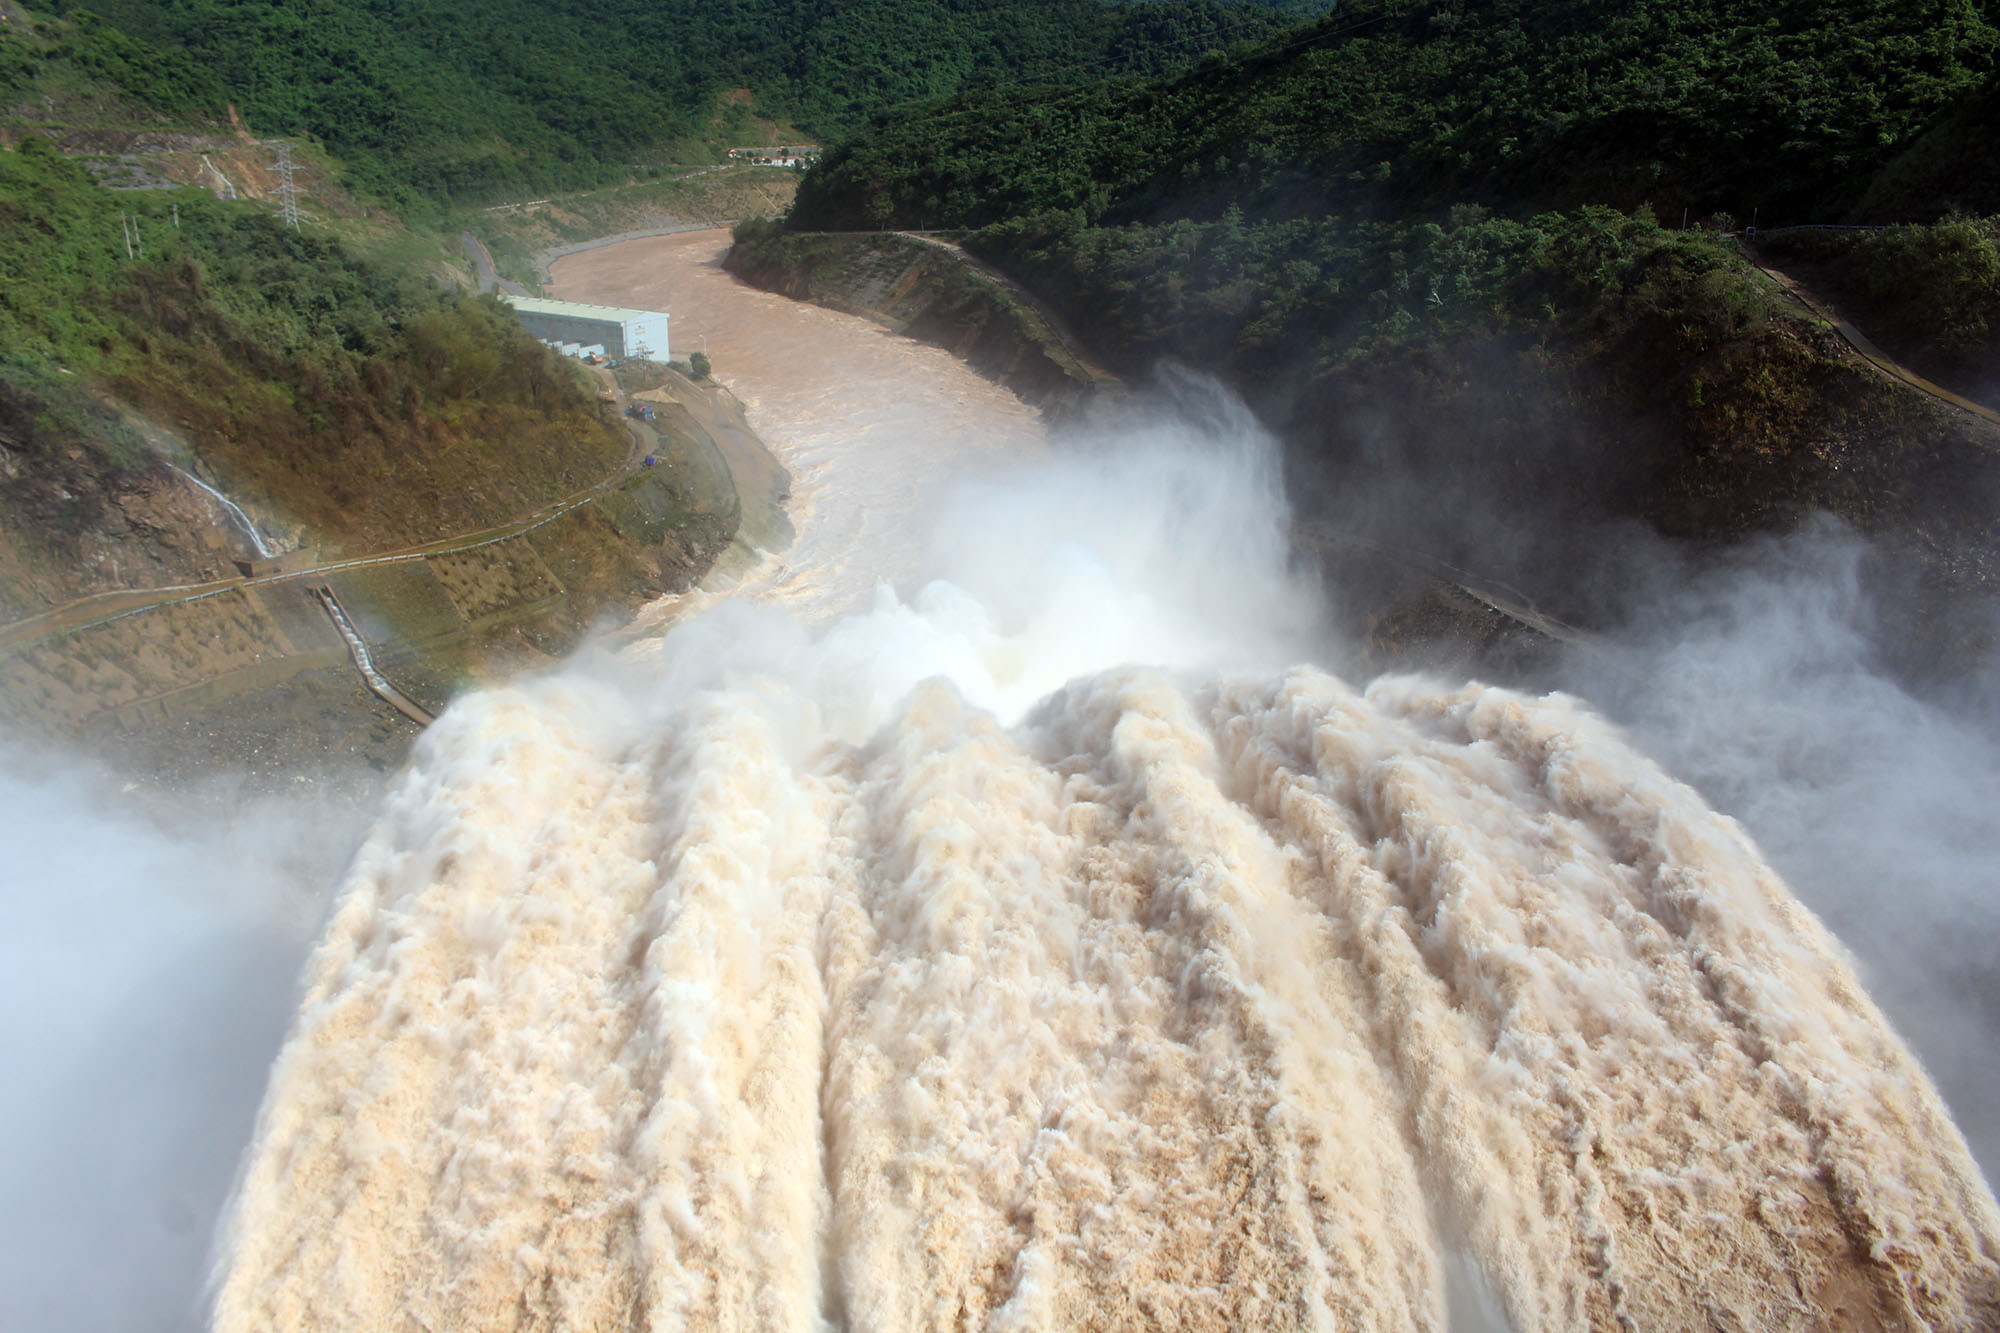 Tháng 8/2019, Thủy điện Bản Vẽ buộc phải xả lũ ở mức xả lớn nhất kể từ lúc nhà máy Thủy điện đi vào vận hành năm 2010 do tác động của mưa to kết hợp lũ từ Lào đổ về. Ảnh: tư liệu Phú Hương